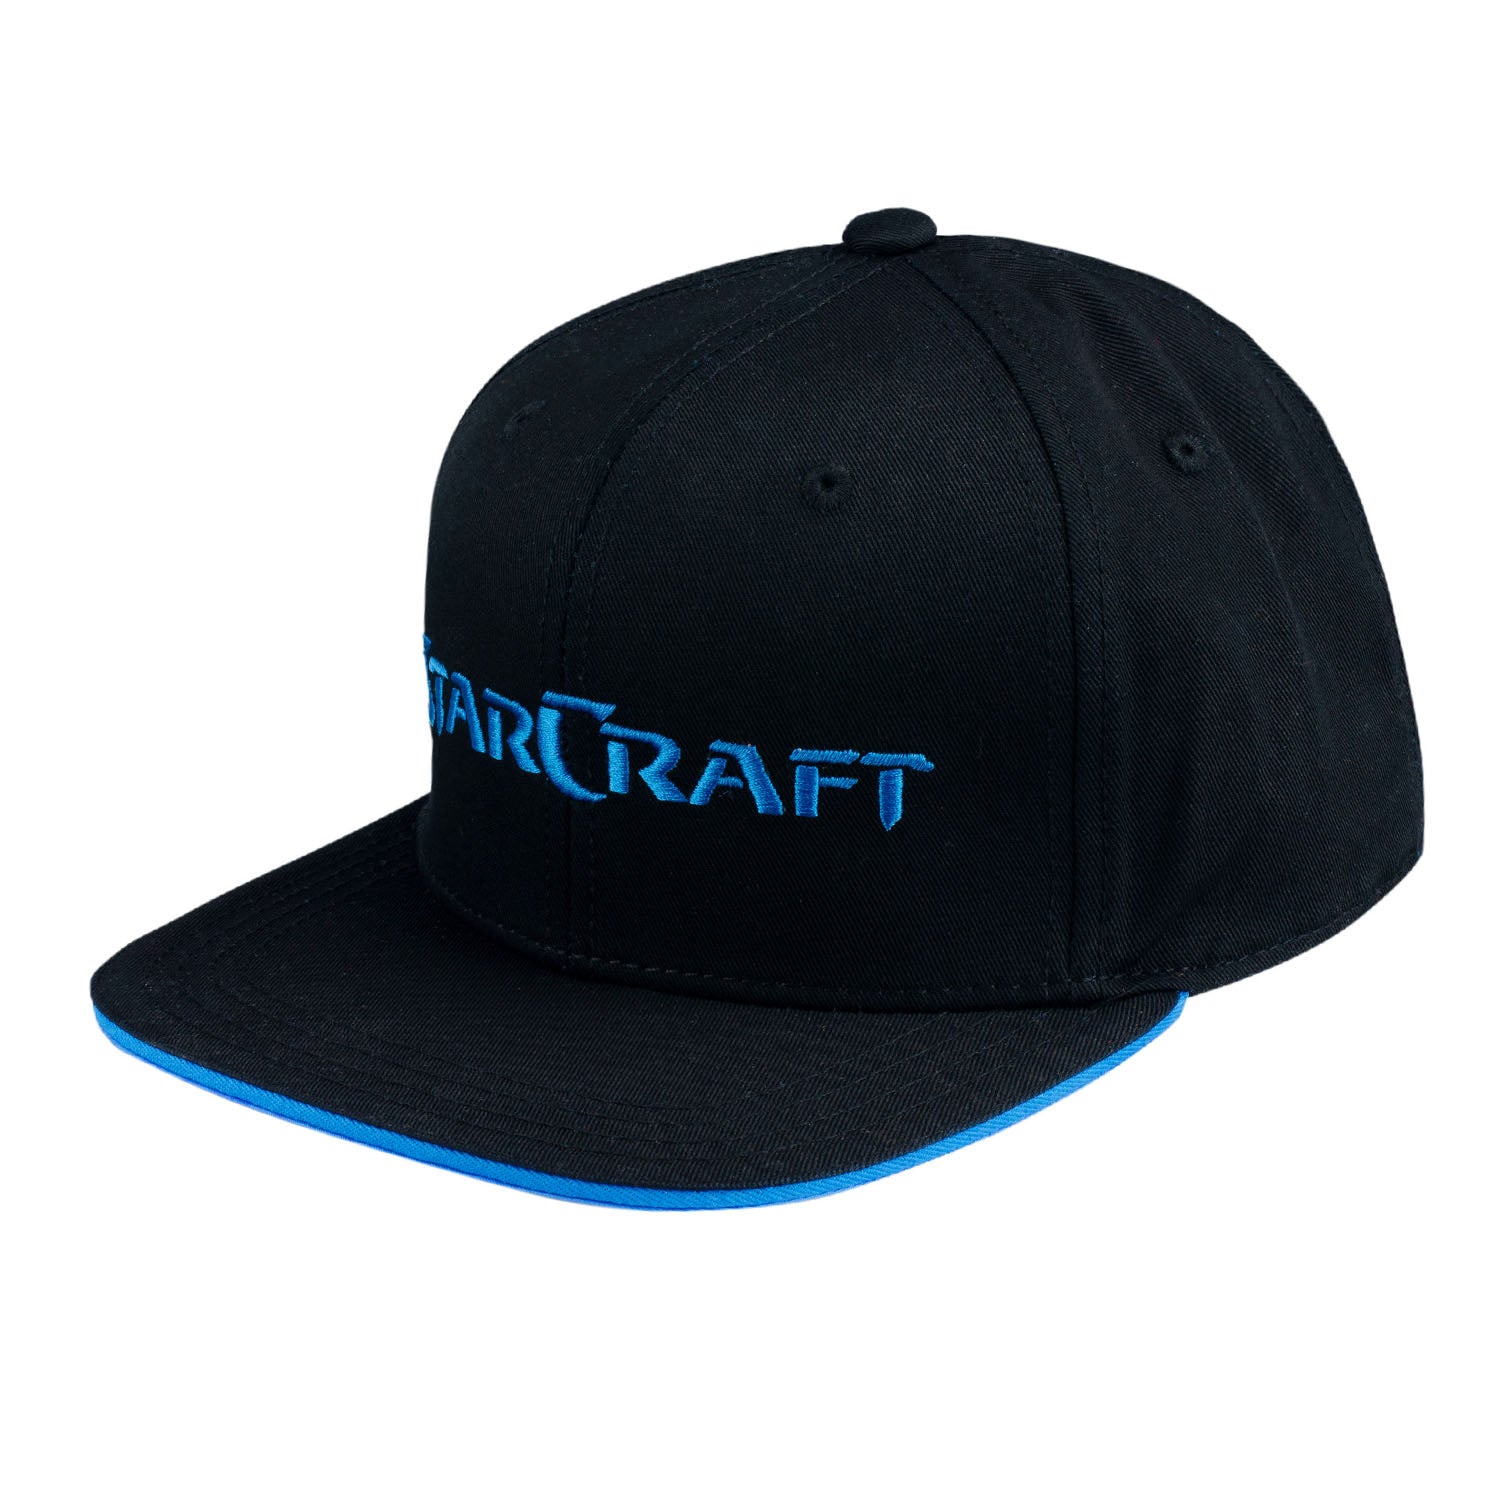 StarCraft J!NX Black Flatbill Snapback Hat  - Left View